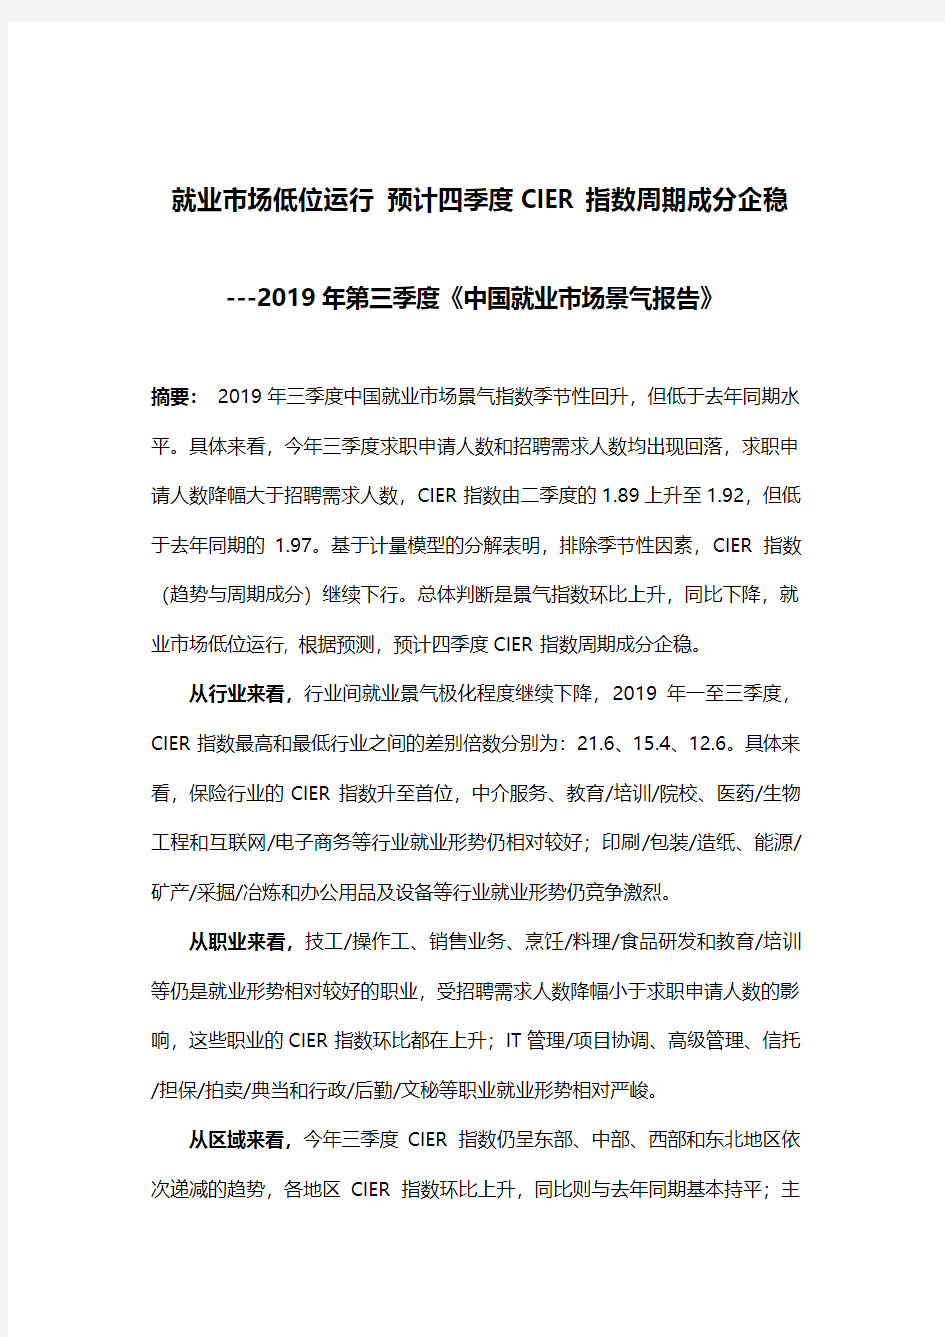 2019年第三季度《中国就业市场景气报告》-智联招聘-201910